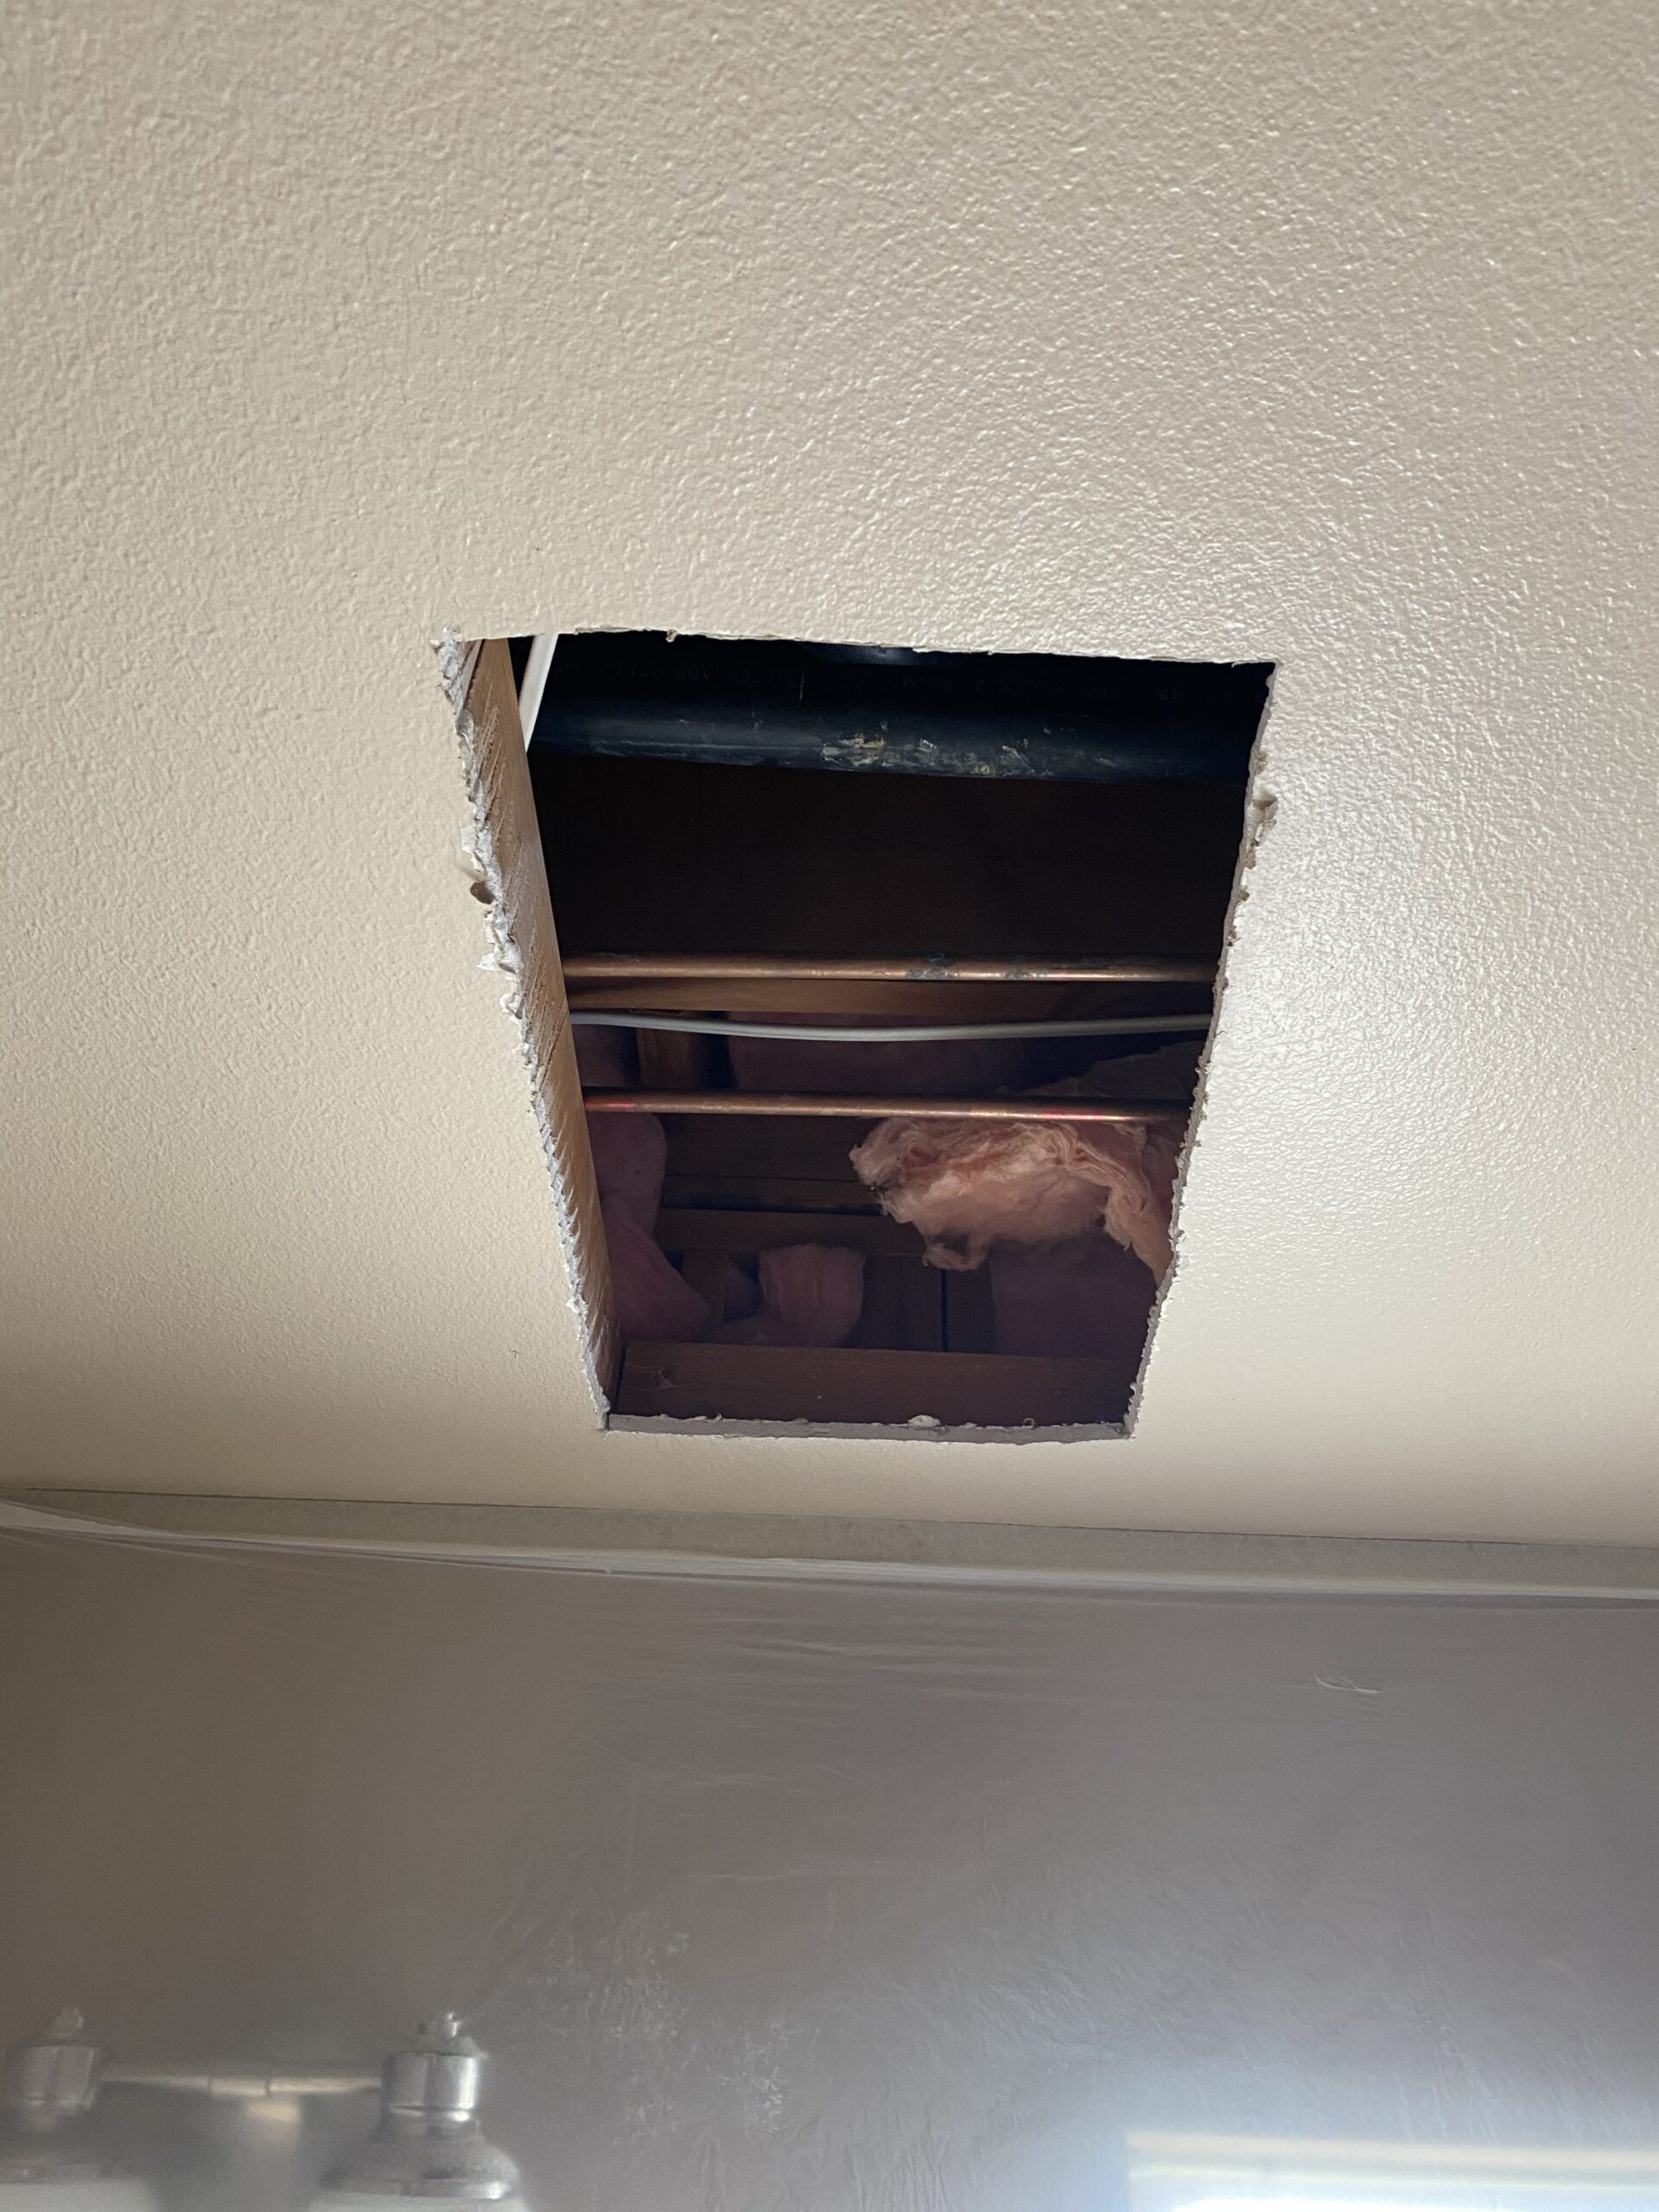 Bathroom ceiling drywall repair before